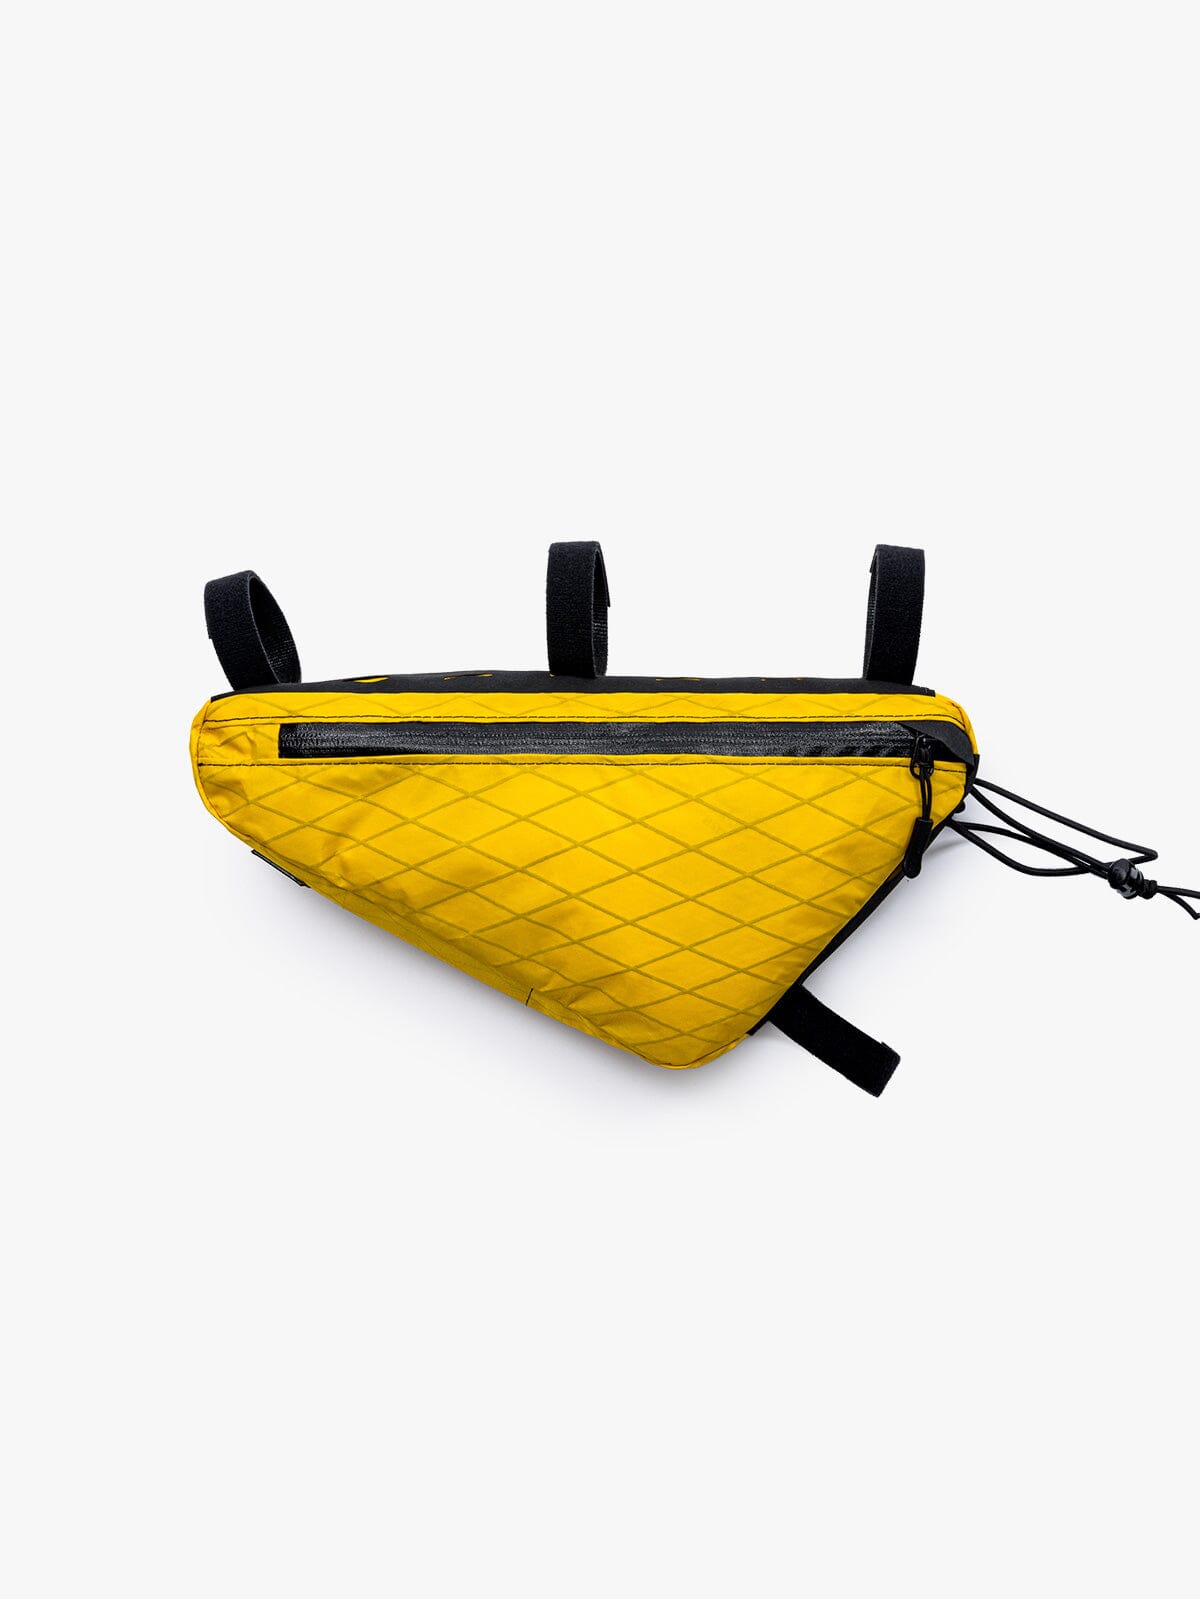 Slice Frame Bag by Mission Workshop - Weerbestendige tassen & technische kleding - San Francisco & Los Angeles - Gemaakt om te weerstaan - Voor altijd gegarandeerd